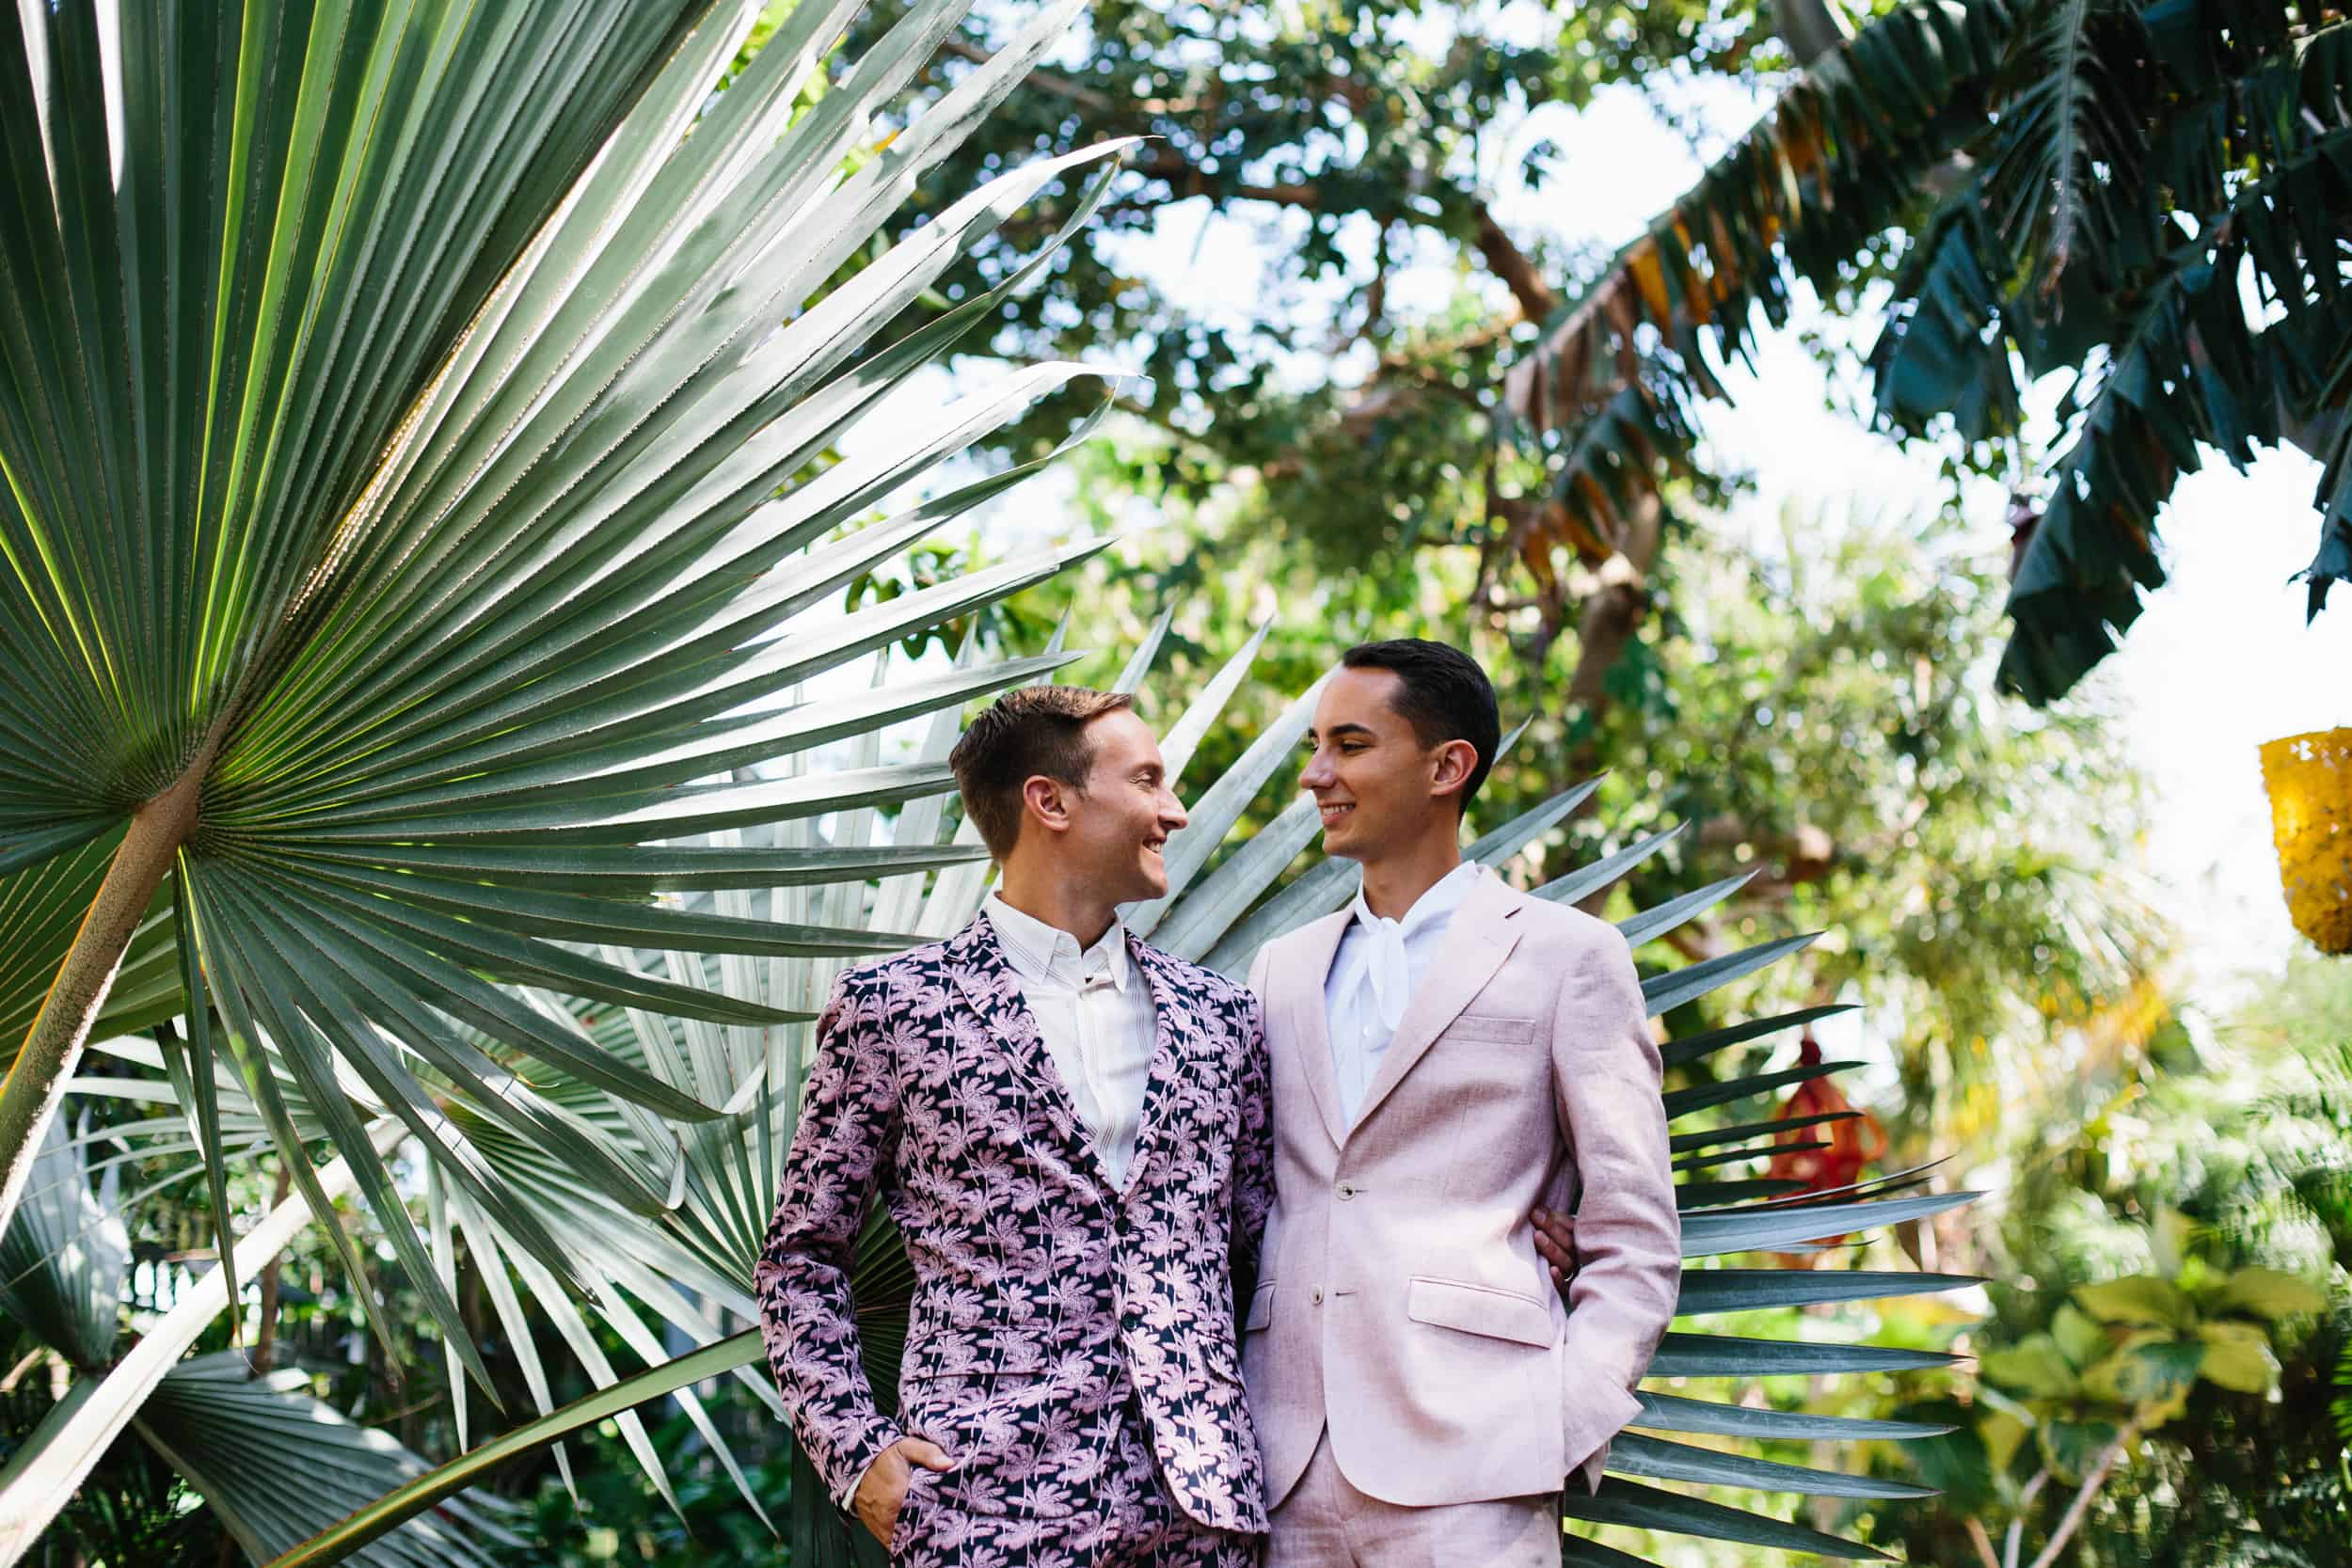 Wedding at the Miami Beach Botanical Garden